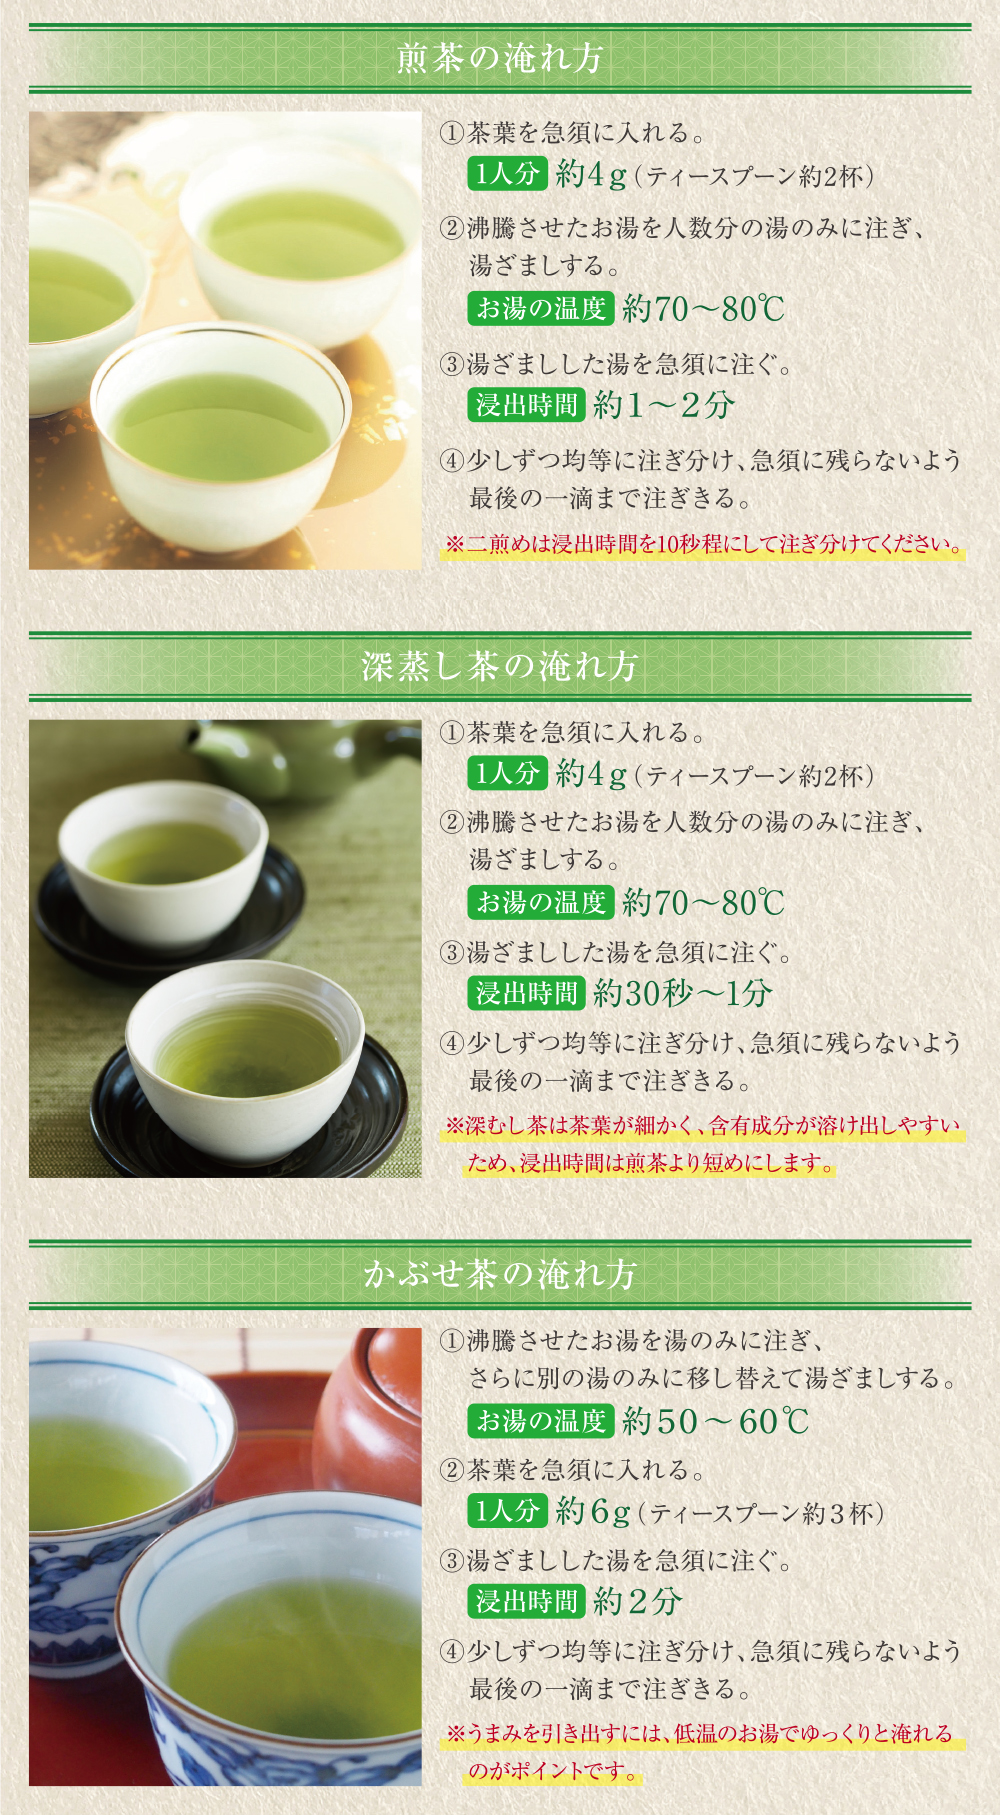 星乃絆(煎茶・深蒸し茶・かぶせ茶 各80g)